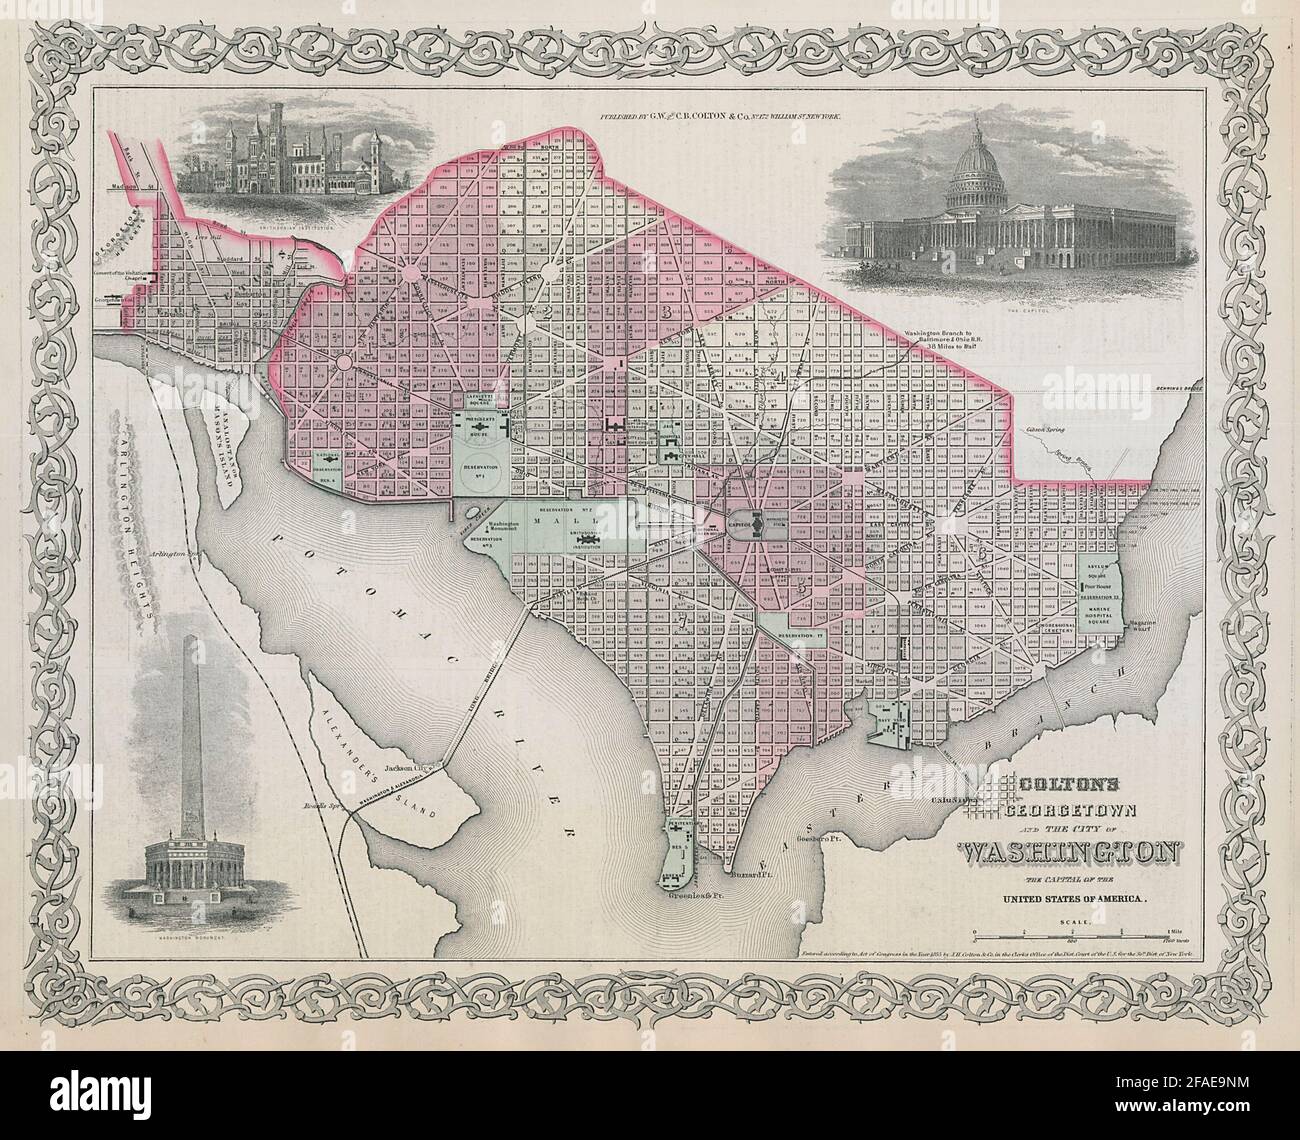 Georgetown und die Stadt Washington. Stadtplan von Washington DC. COLTON 1869-Karte Stockfoto